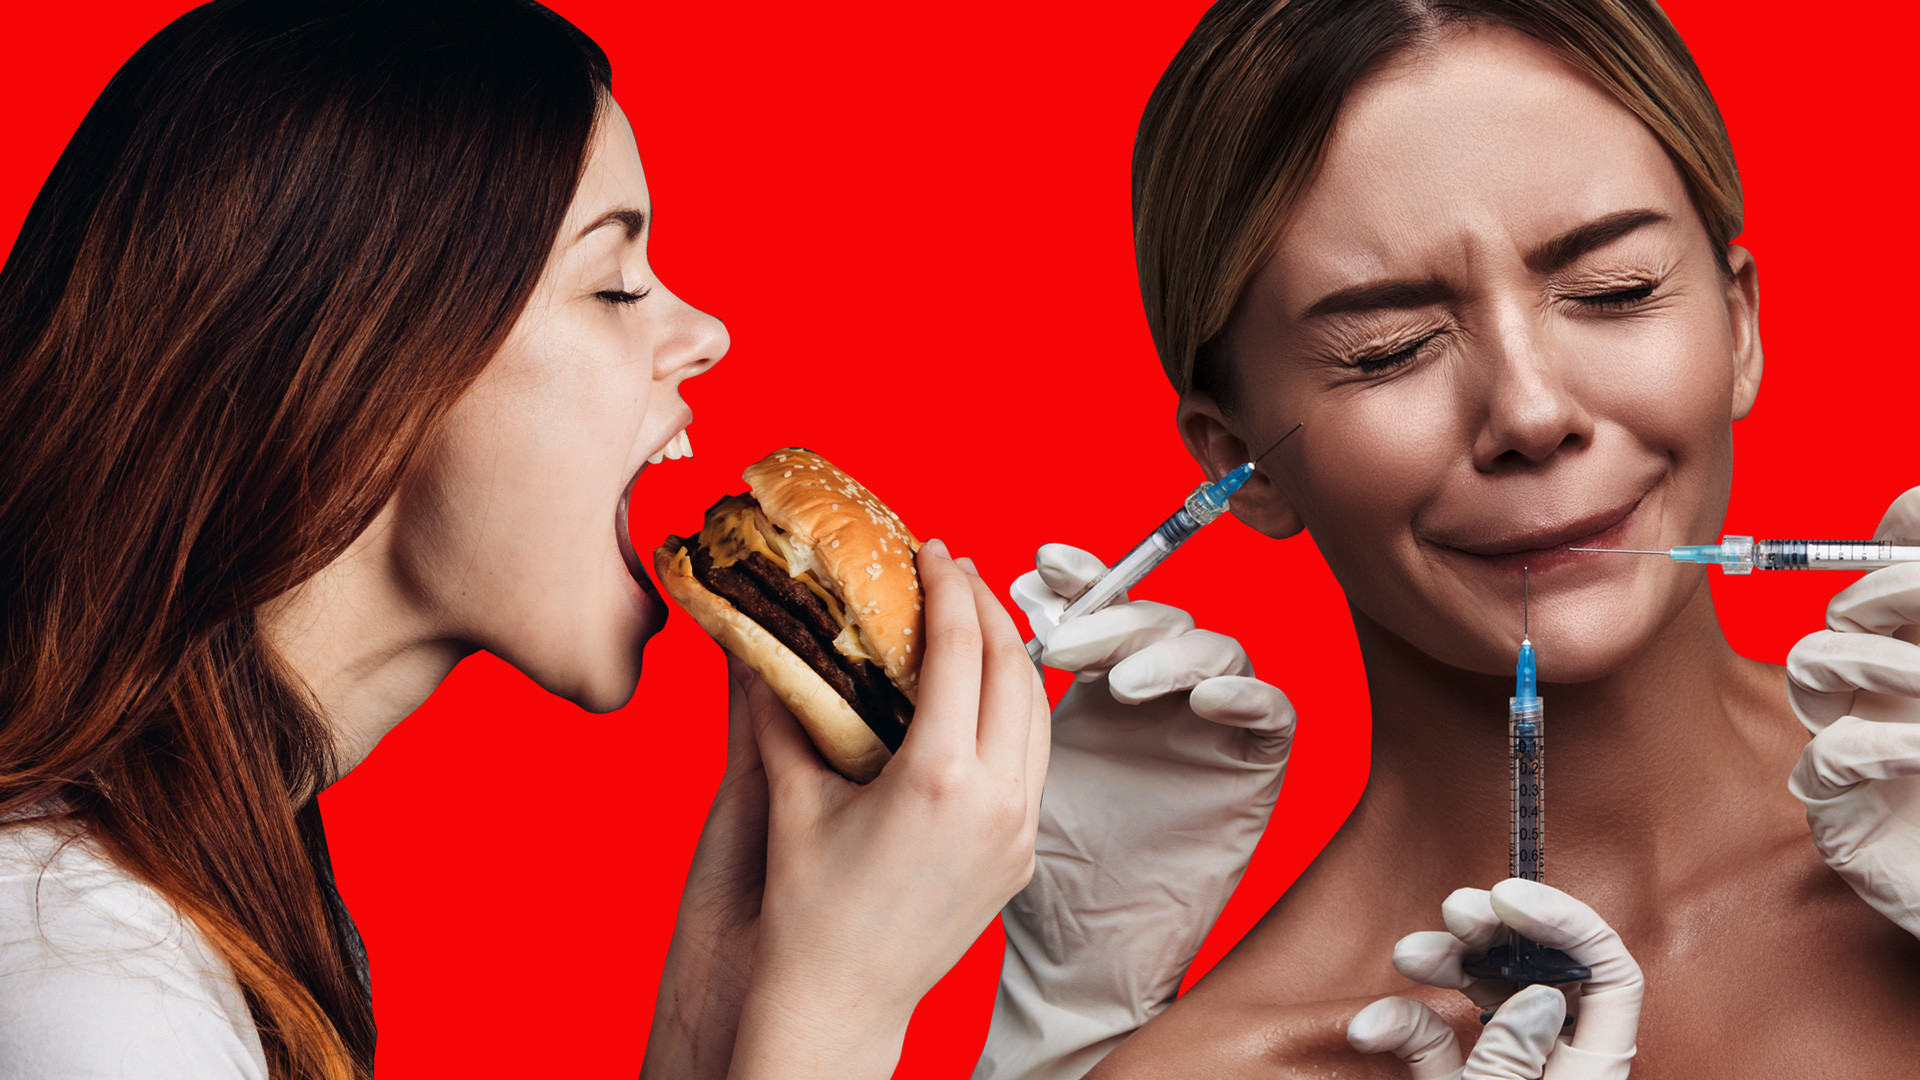 Укол смерти со вкусом бургера. Как косметологи уродуют людей на фуд-кортах